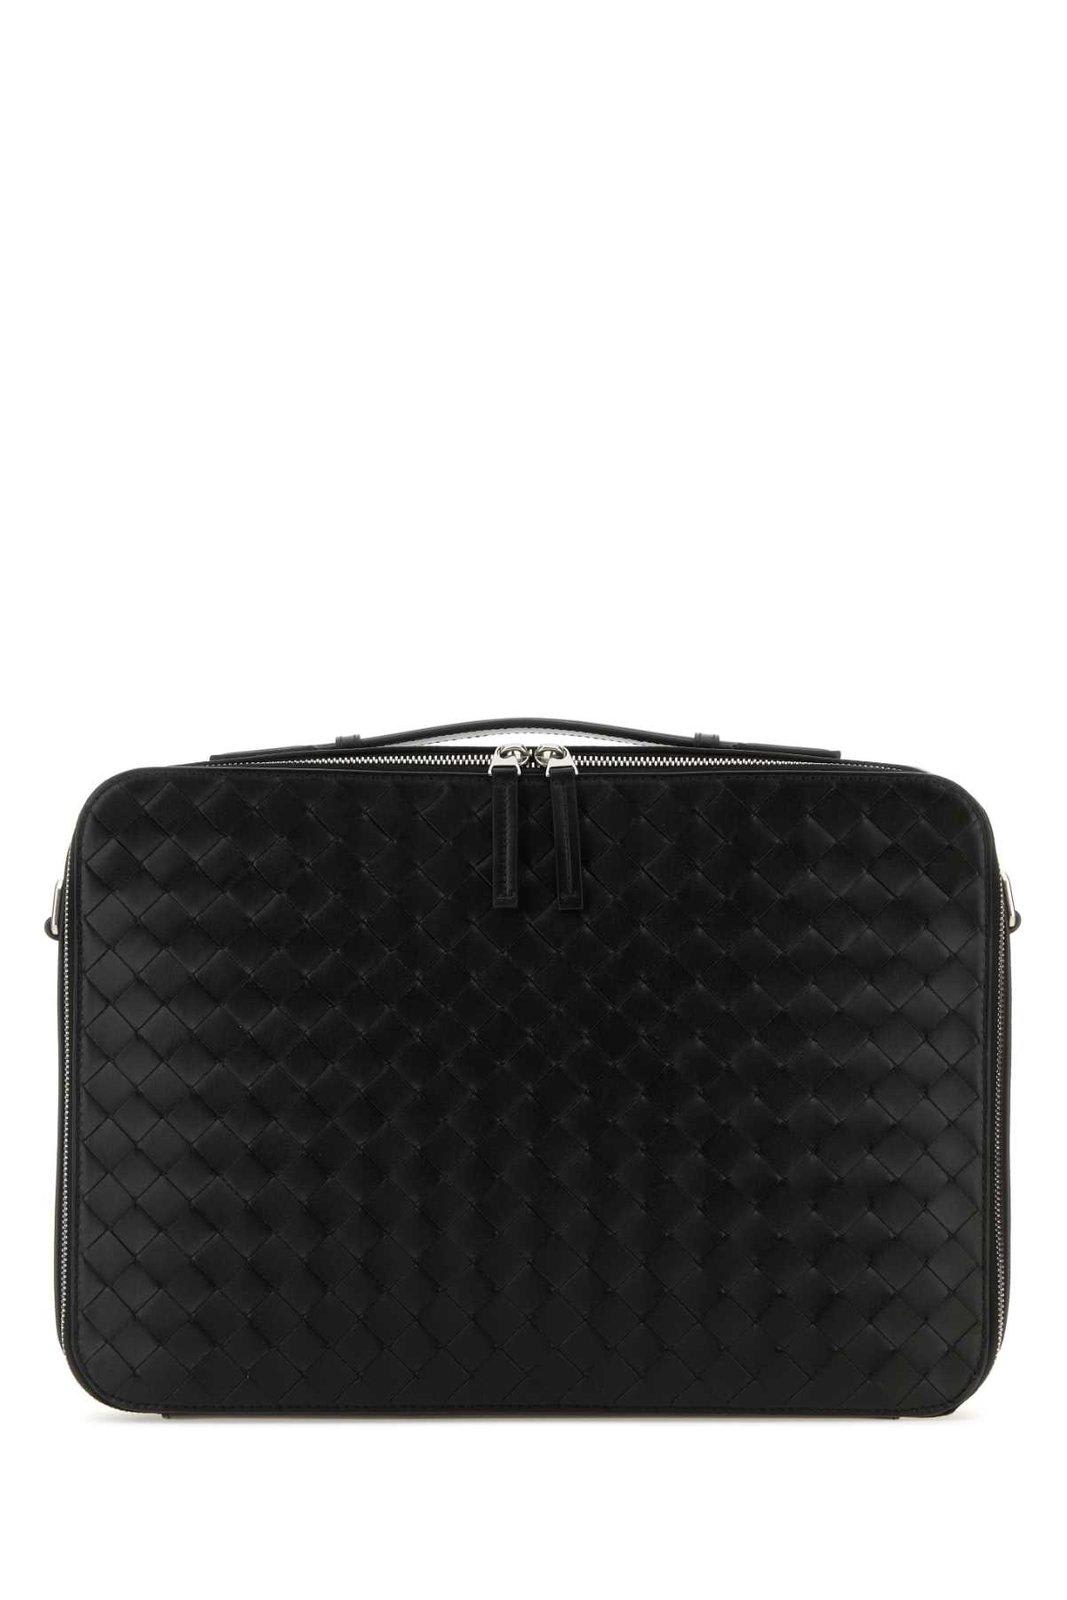 Bottega Veneta Intrecciato Zipped Briefcase In Black